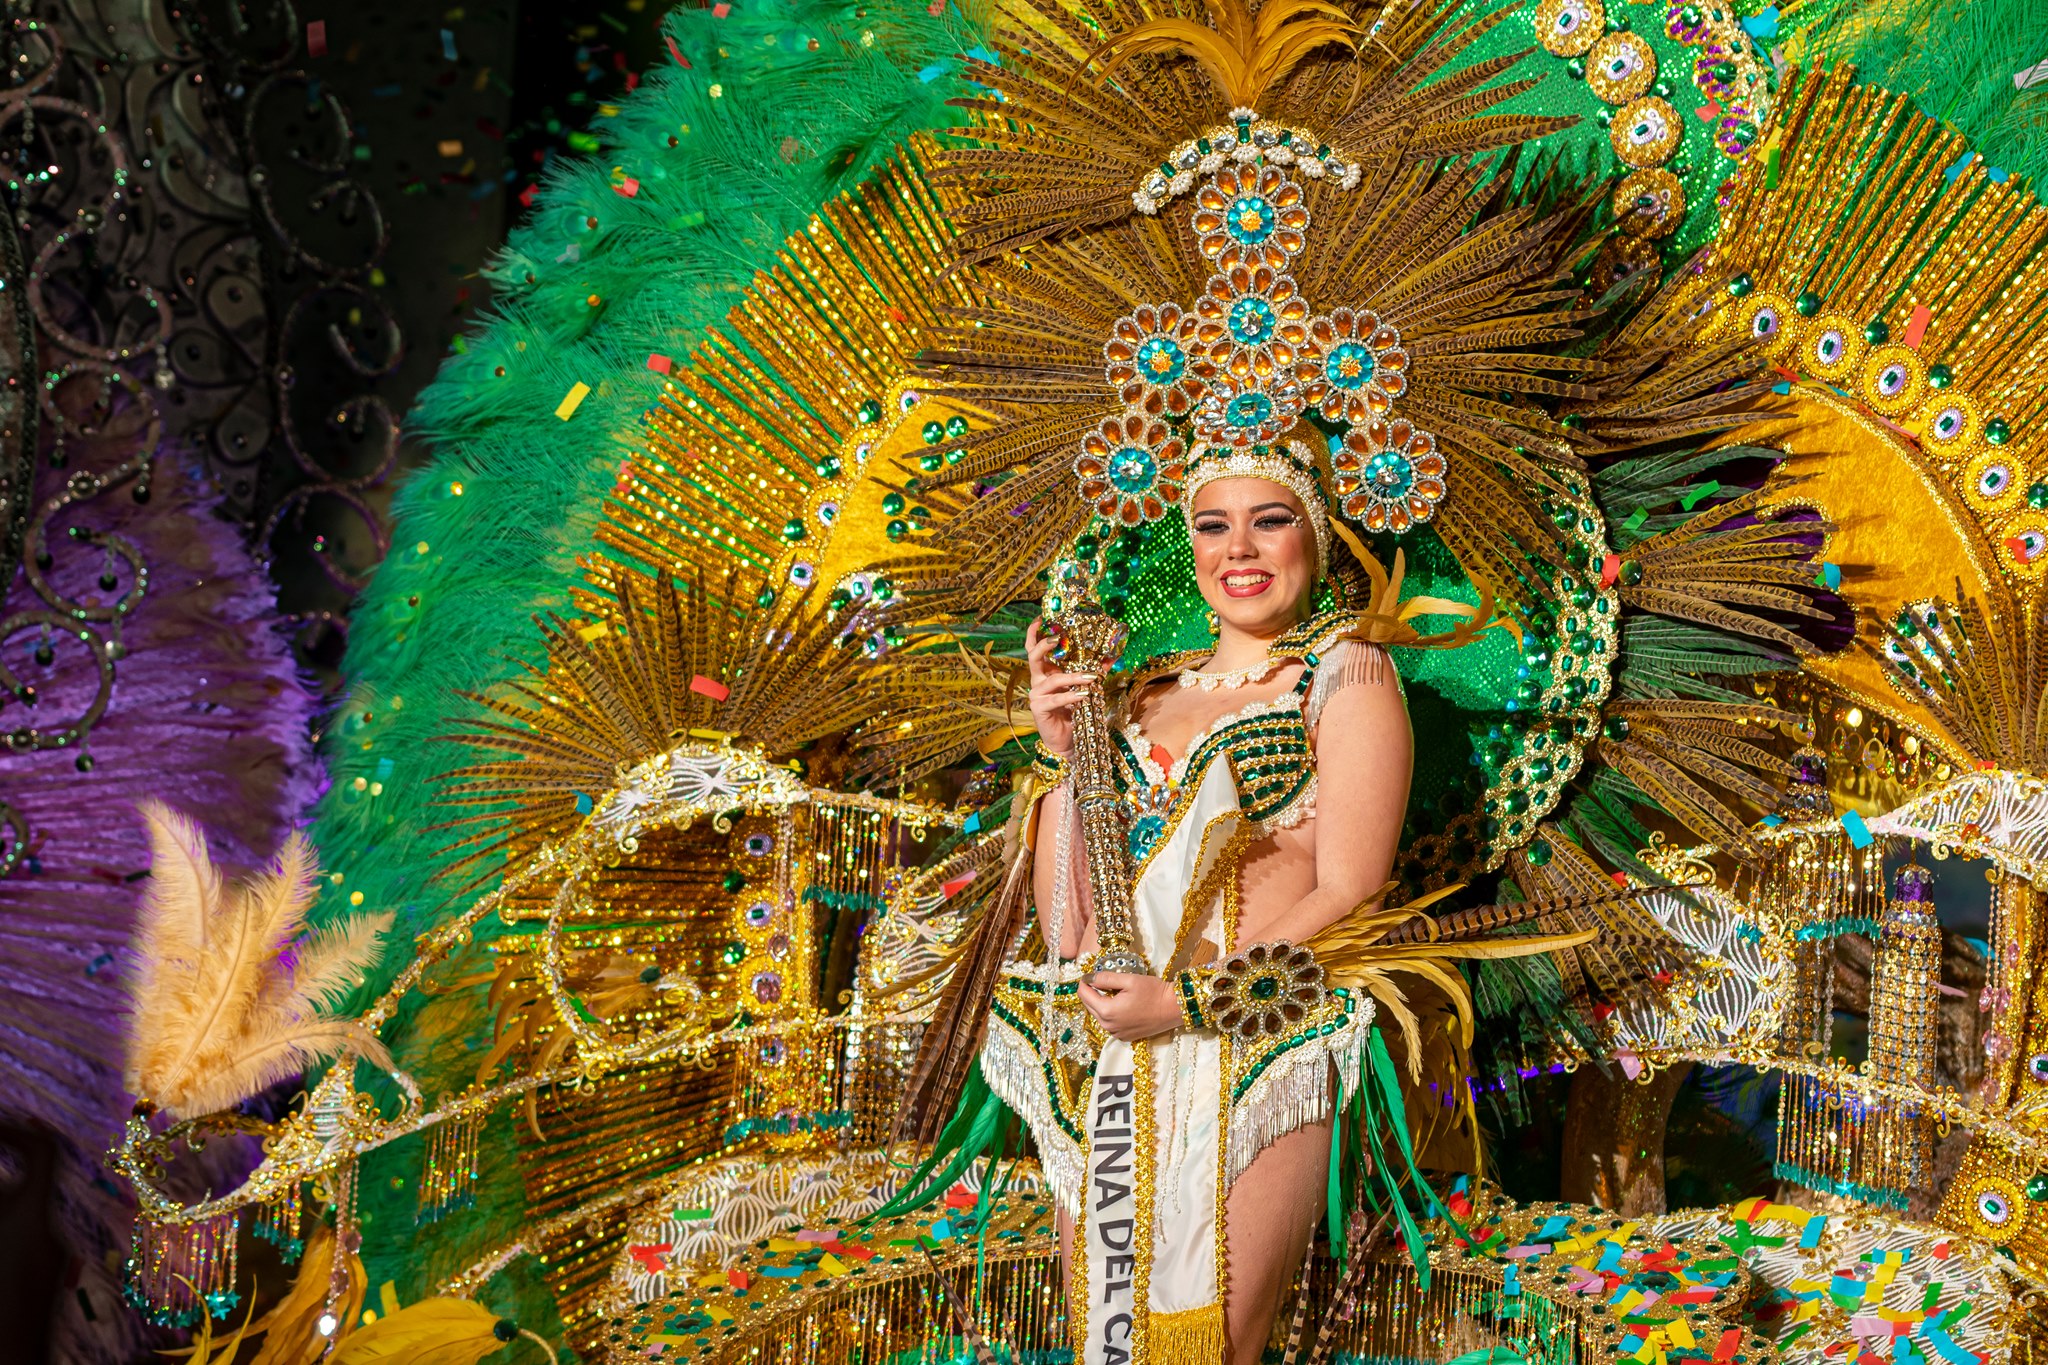 Abierto el plazo para las propuestas a Turutas de Oro del Carnaval